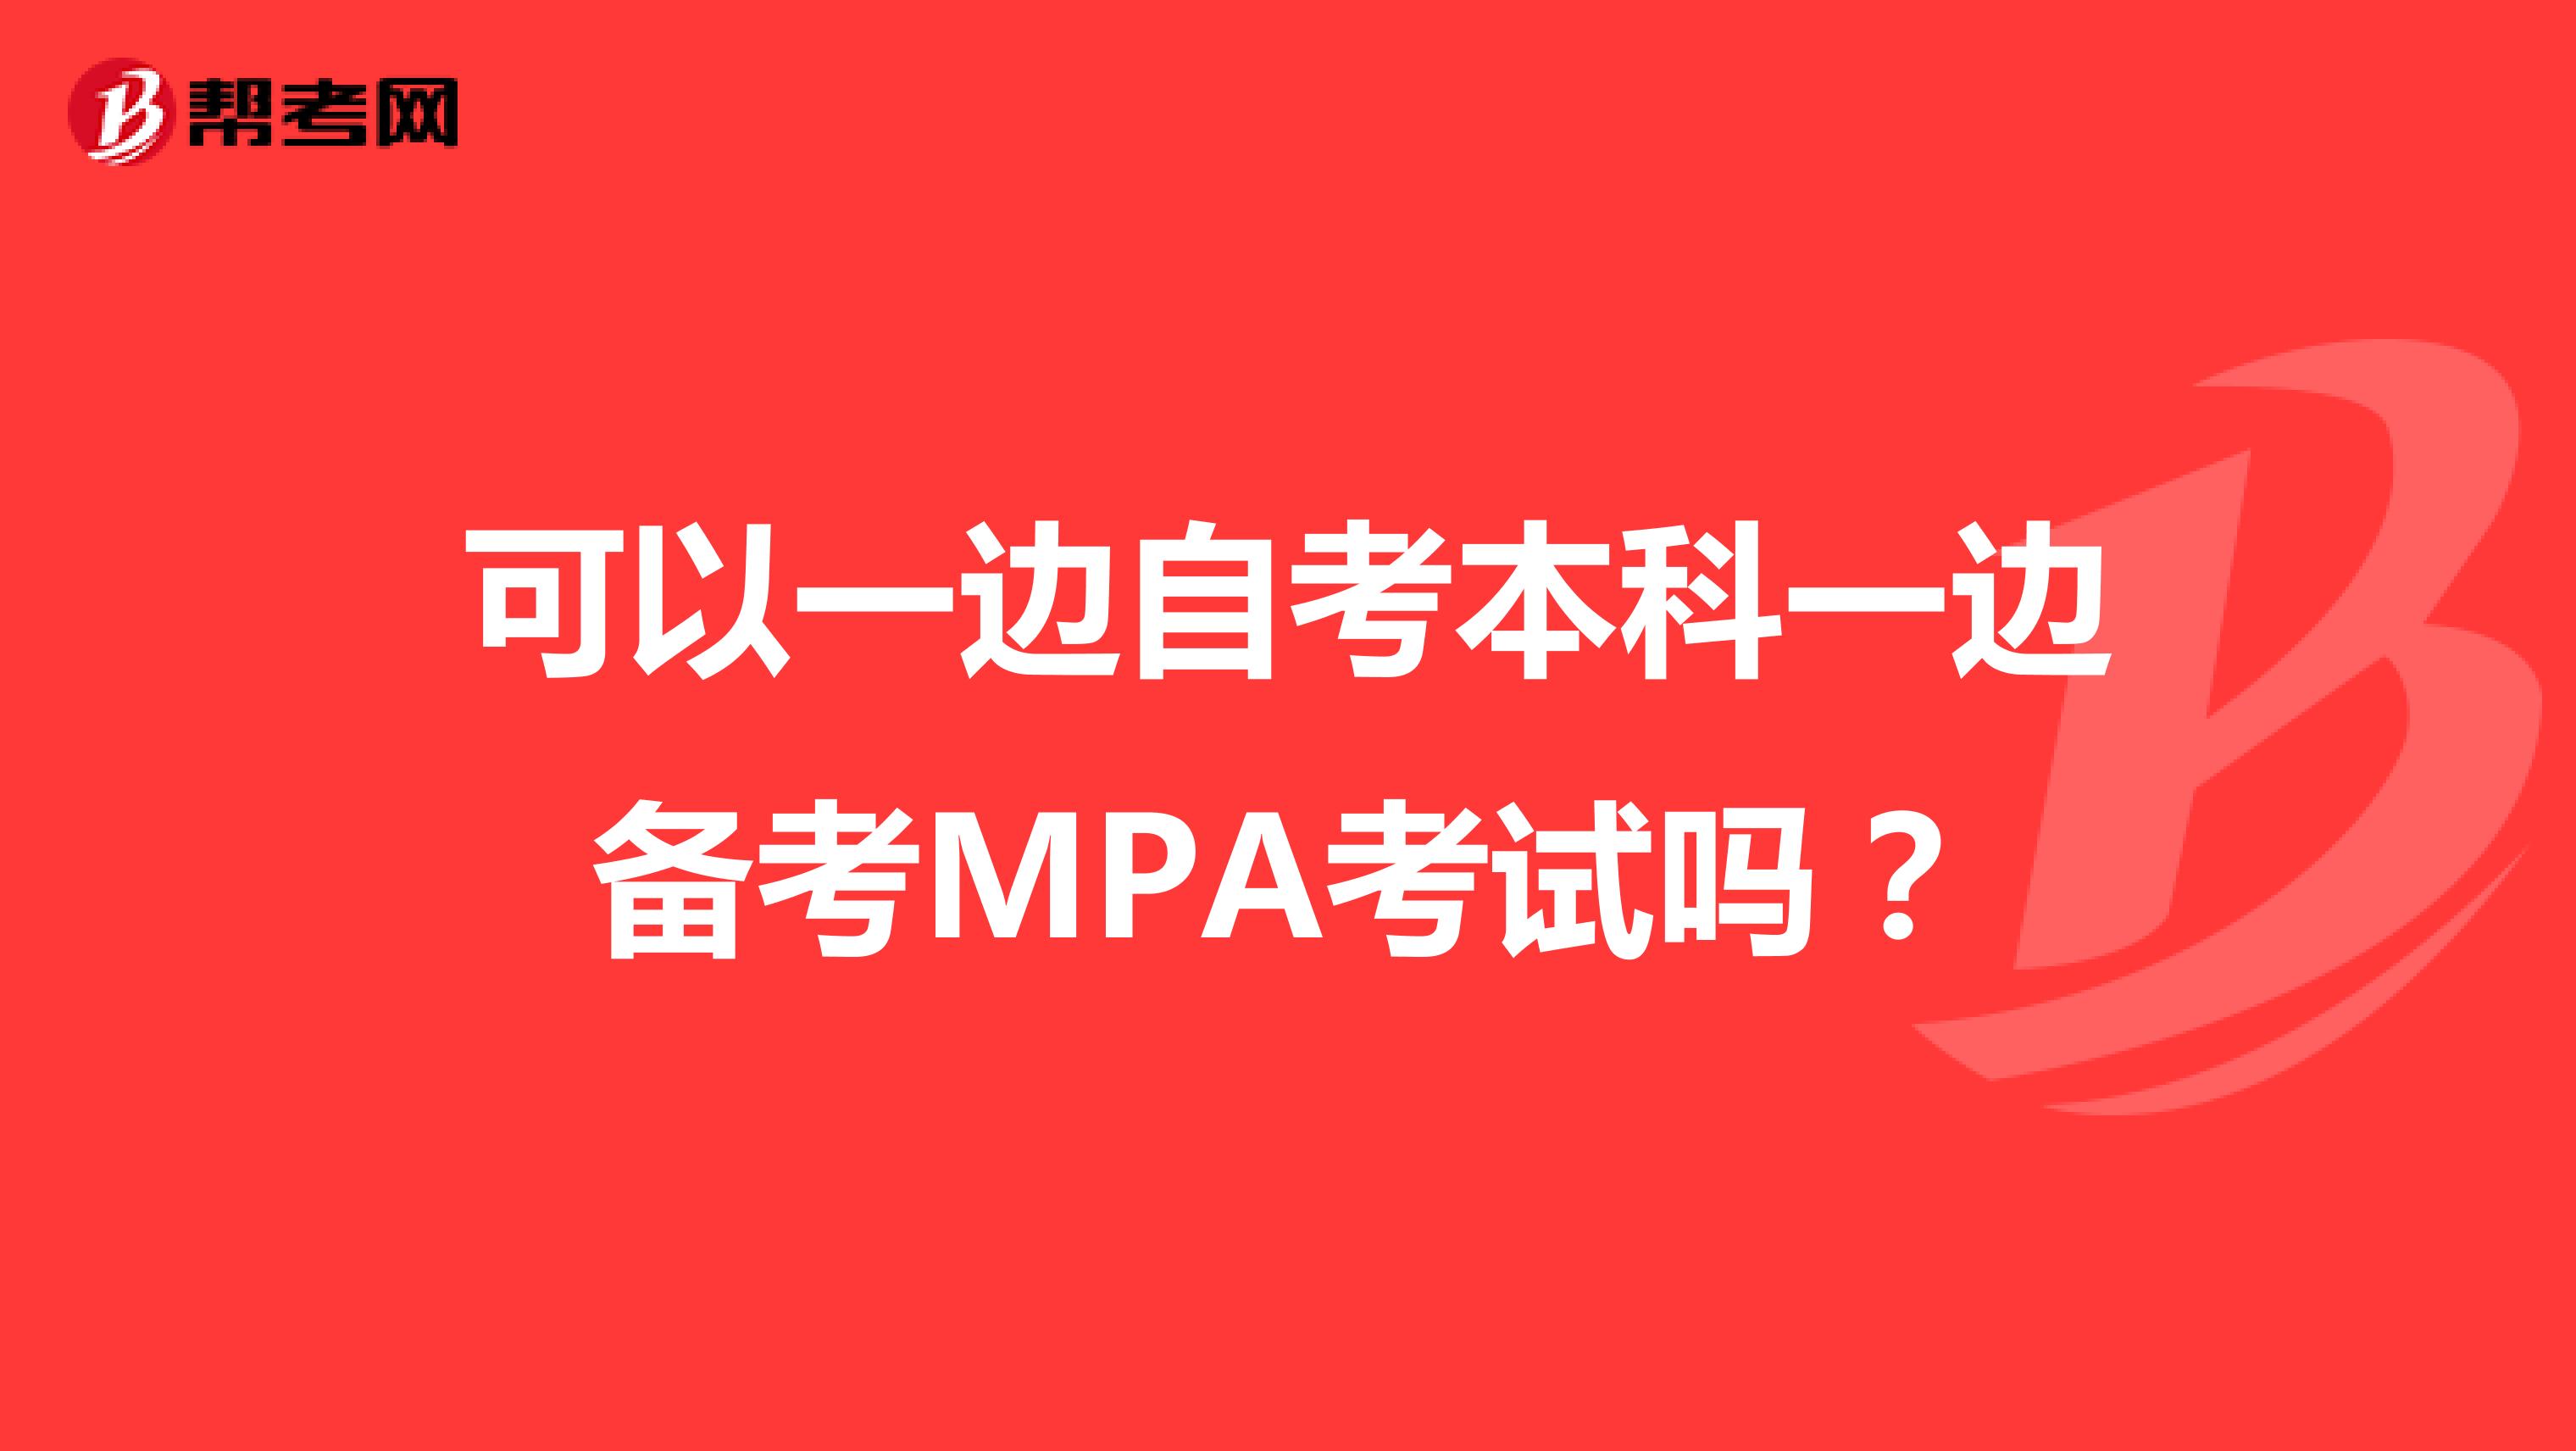 可以一边自考本科一边备考MPA考试吗？